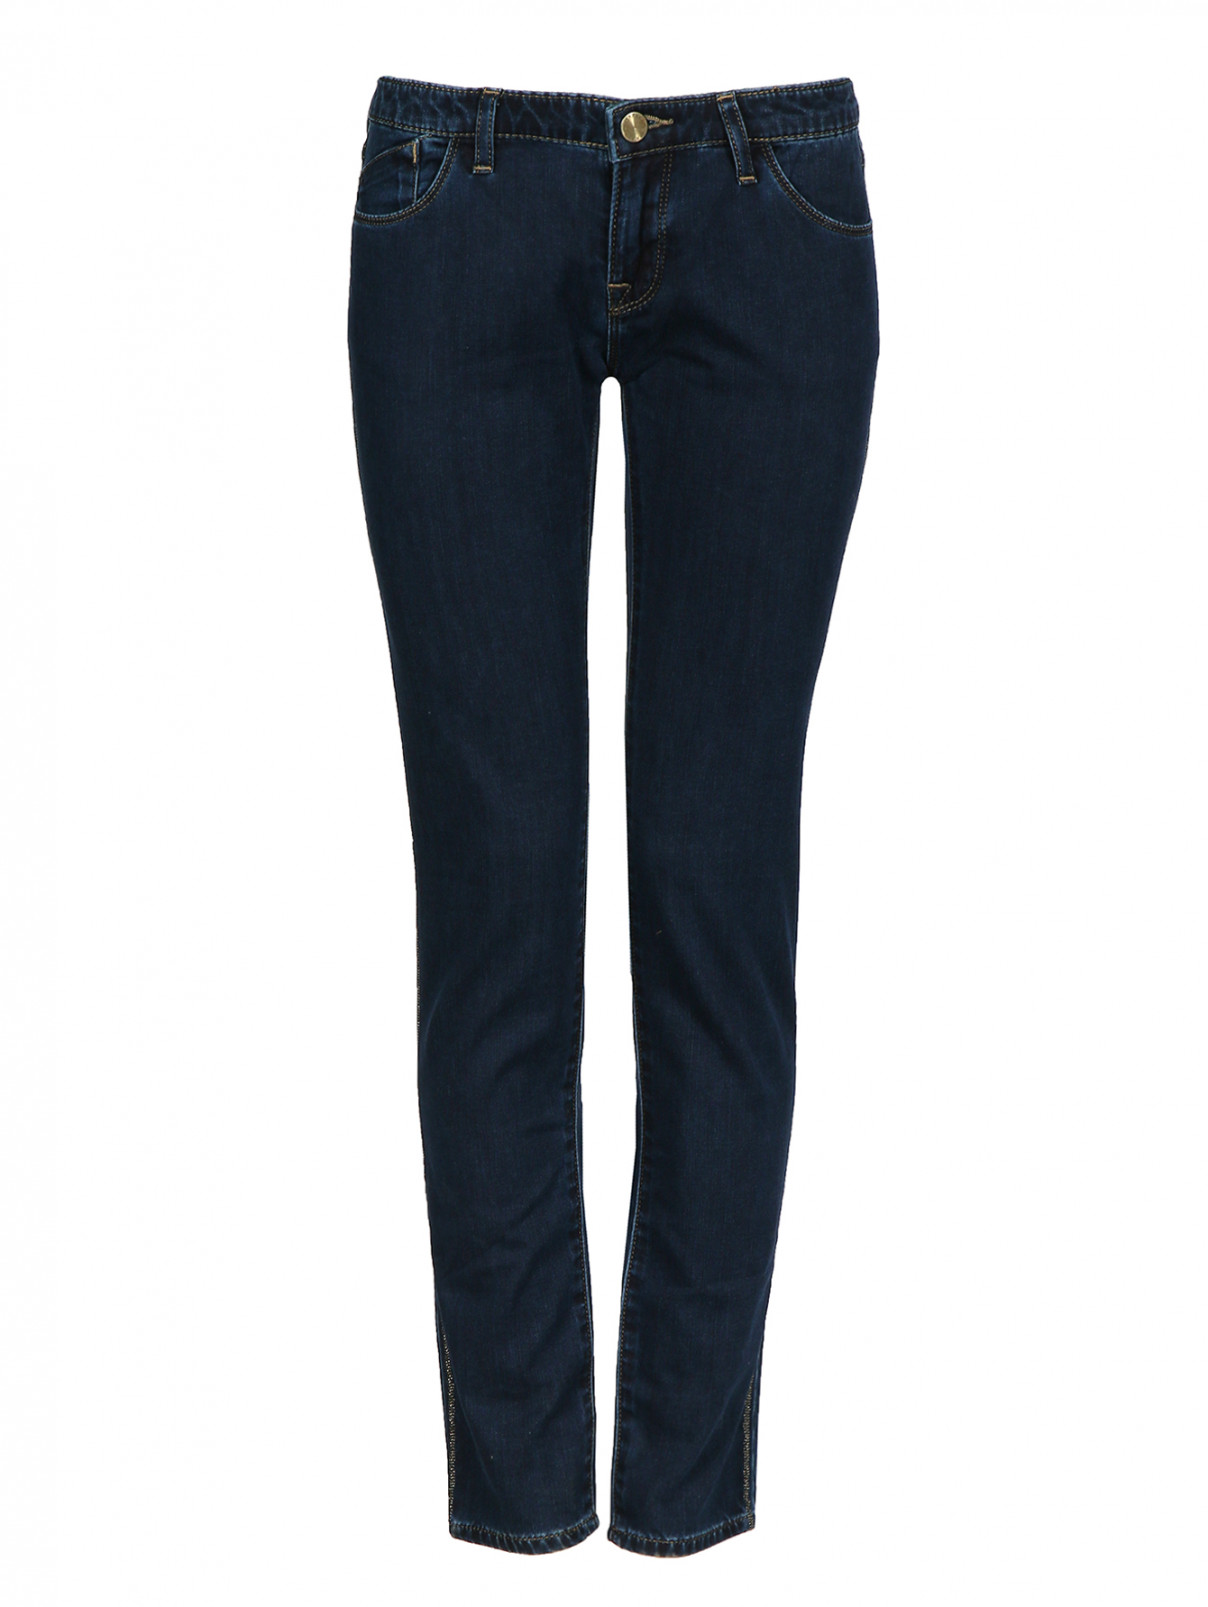 Джинс-скинни Armani Jeans  –  Общий вид  – Цвет:  Синий